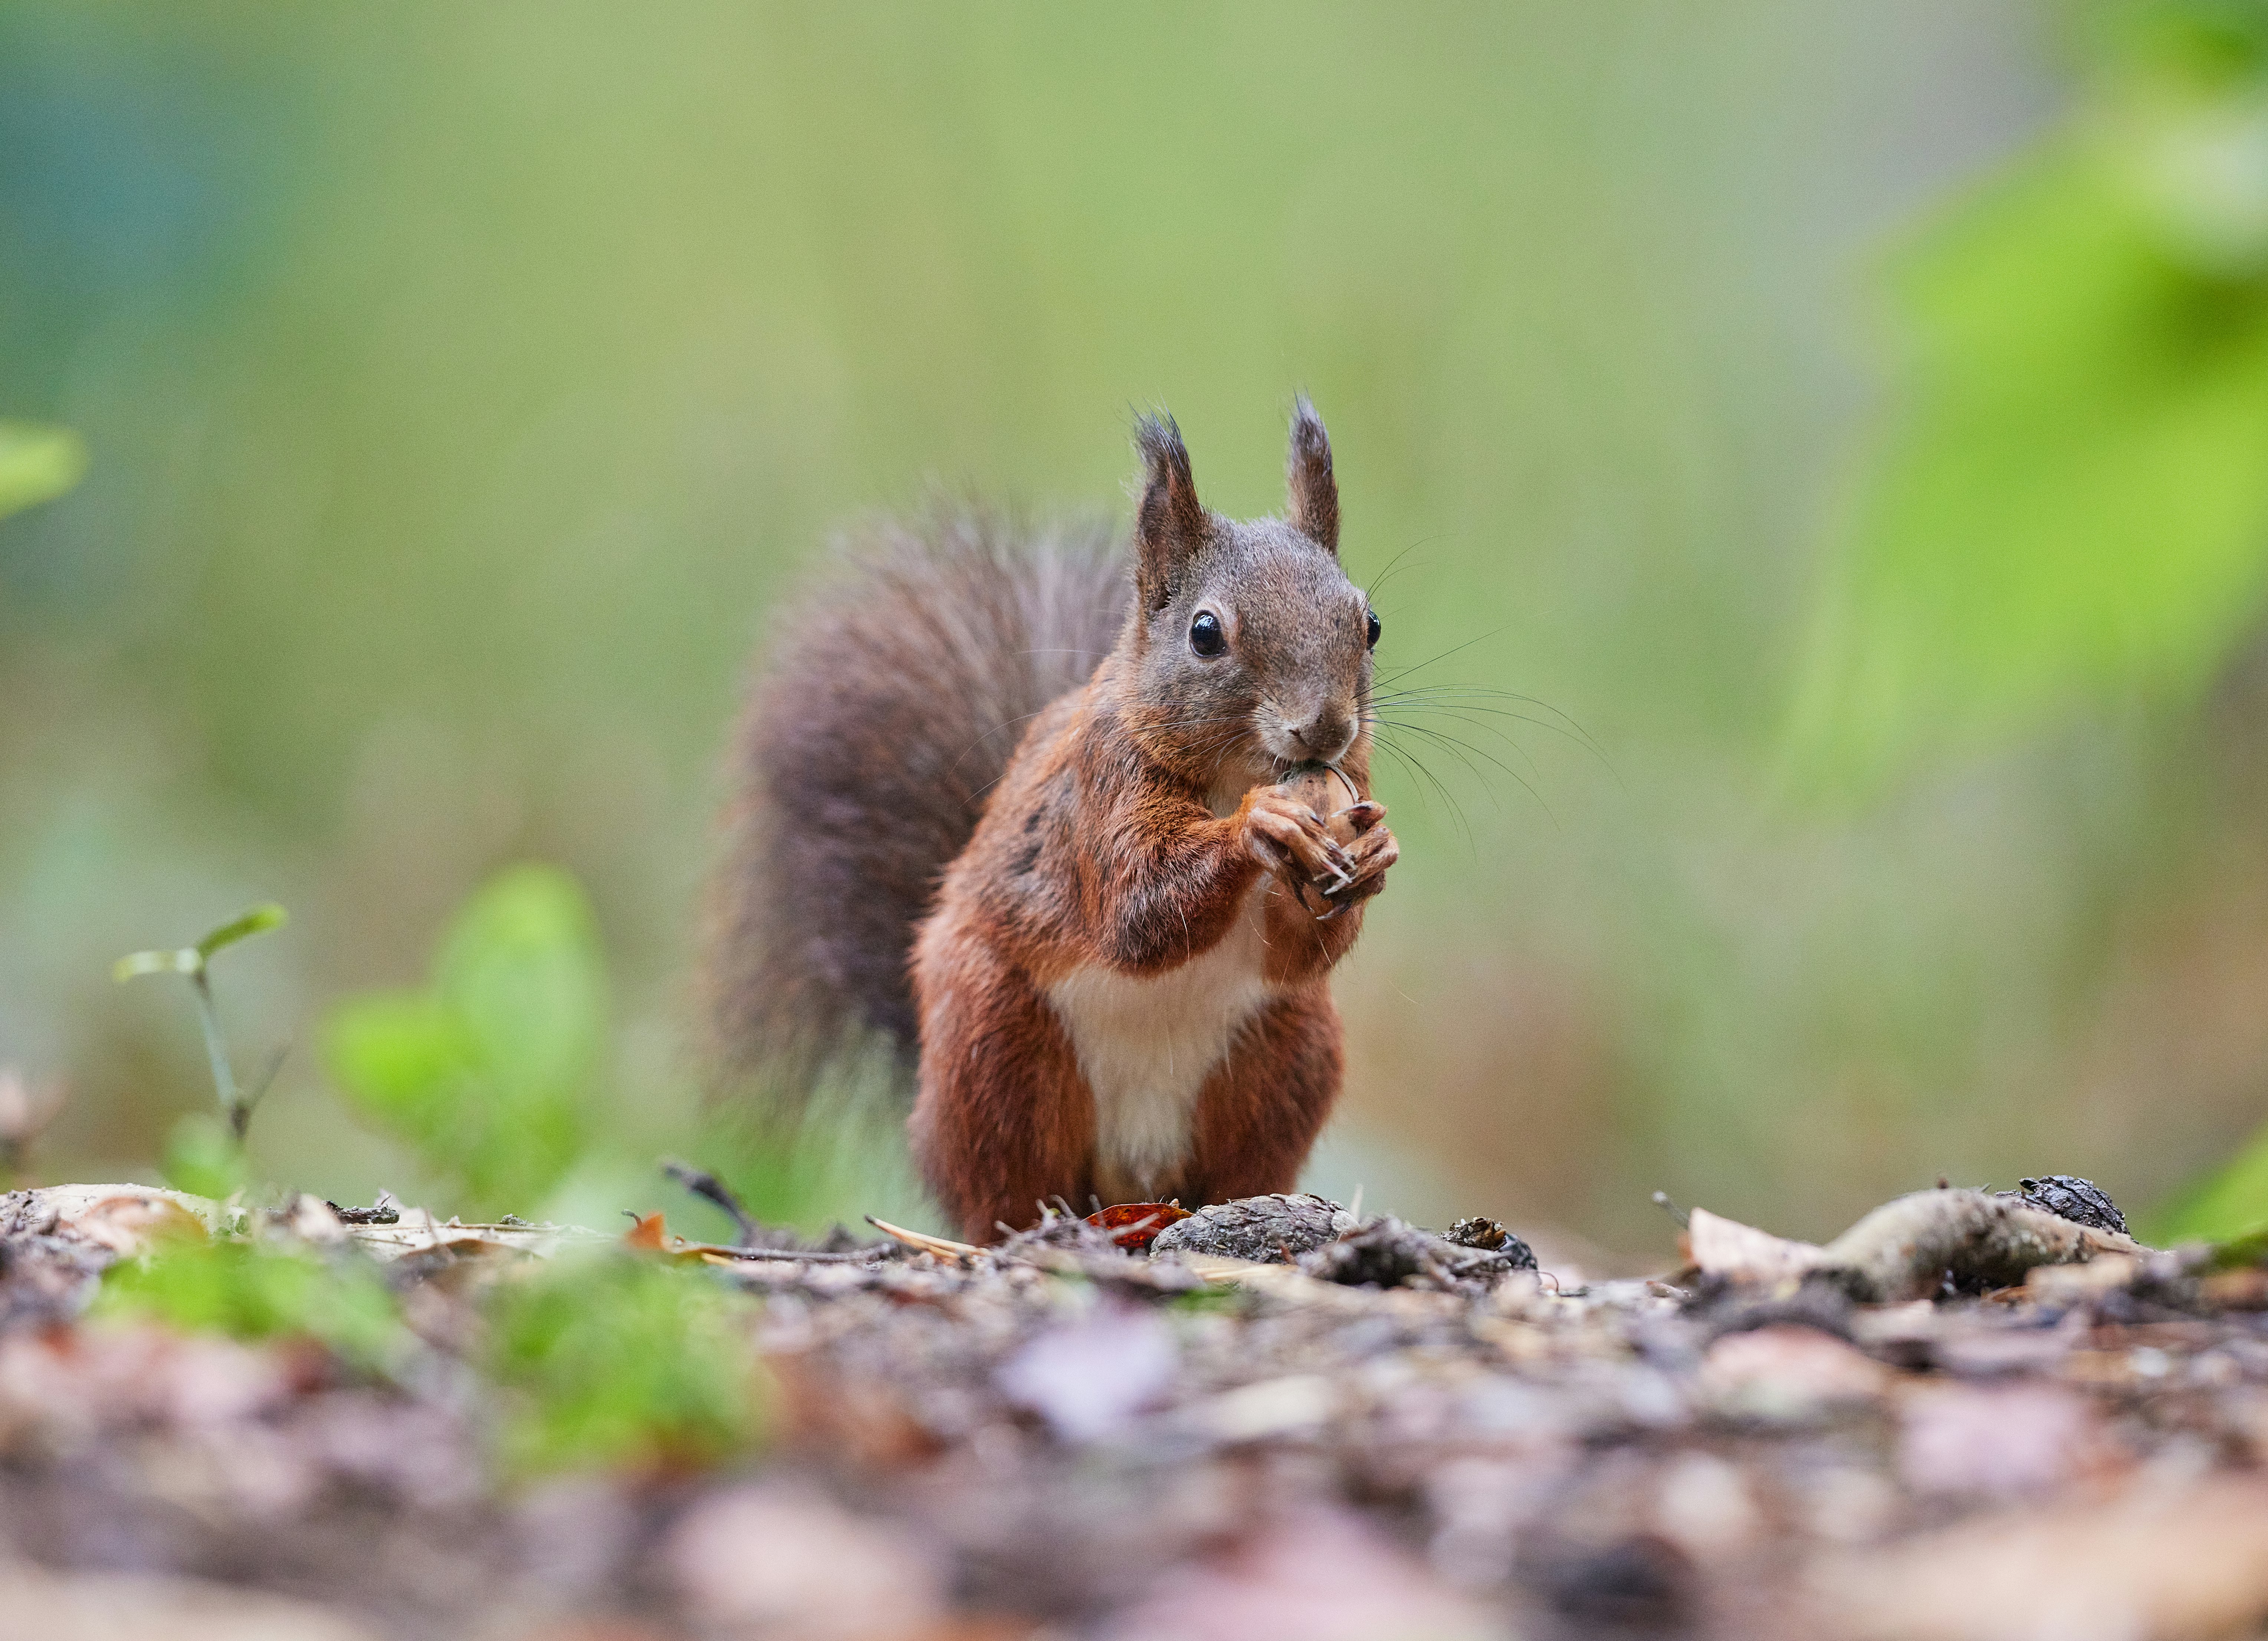 brown squirrel on brown soil during daytime